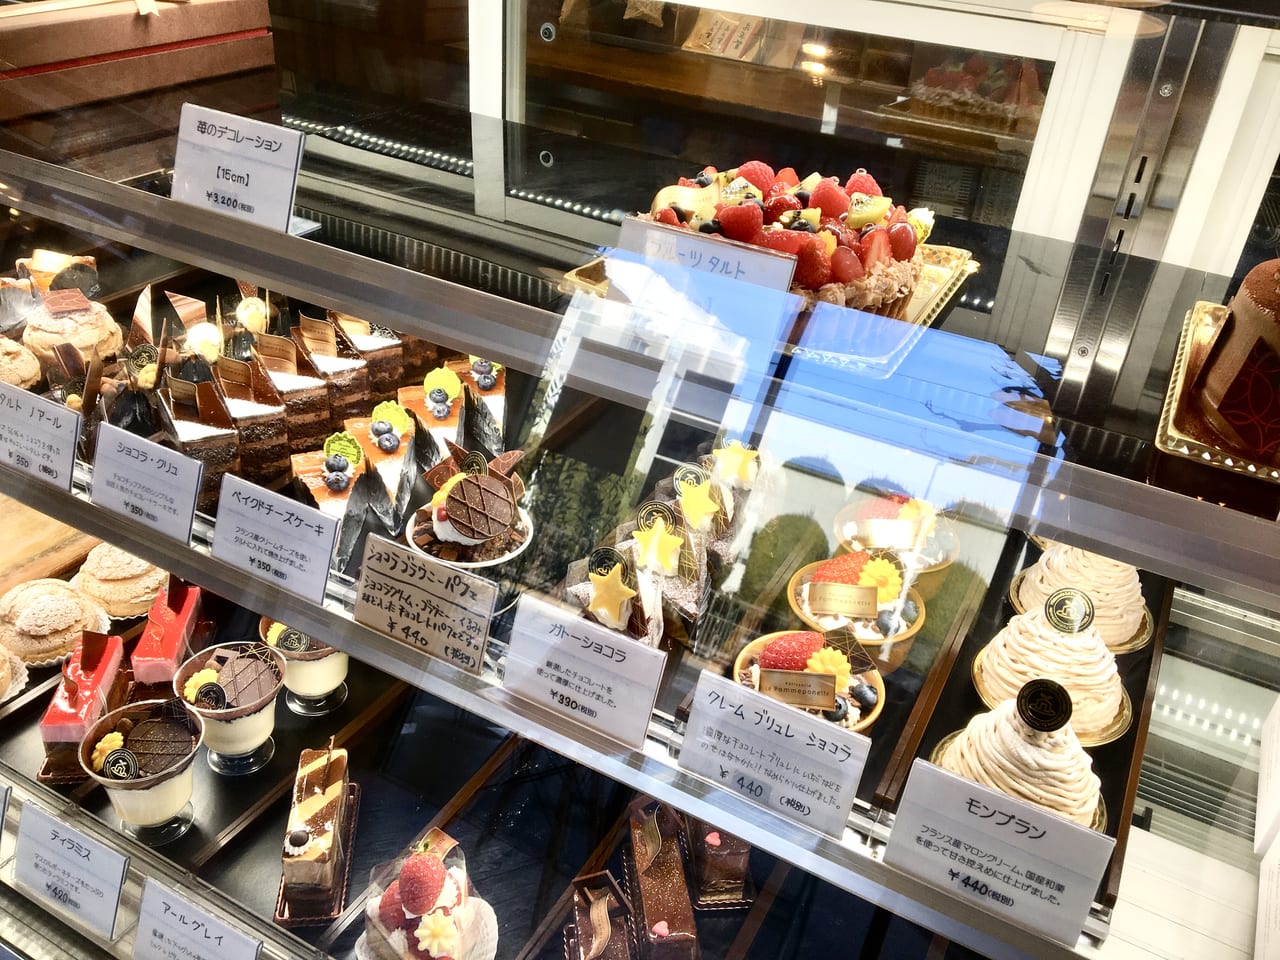 高崎市 イチゴが艶々で美しい ル ポンポネット でショートケーキとタルトを購入してみました 号外net 高崎市